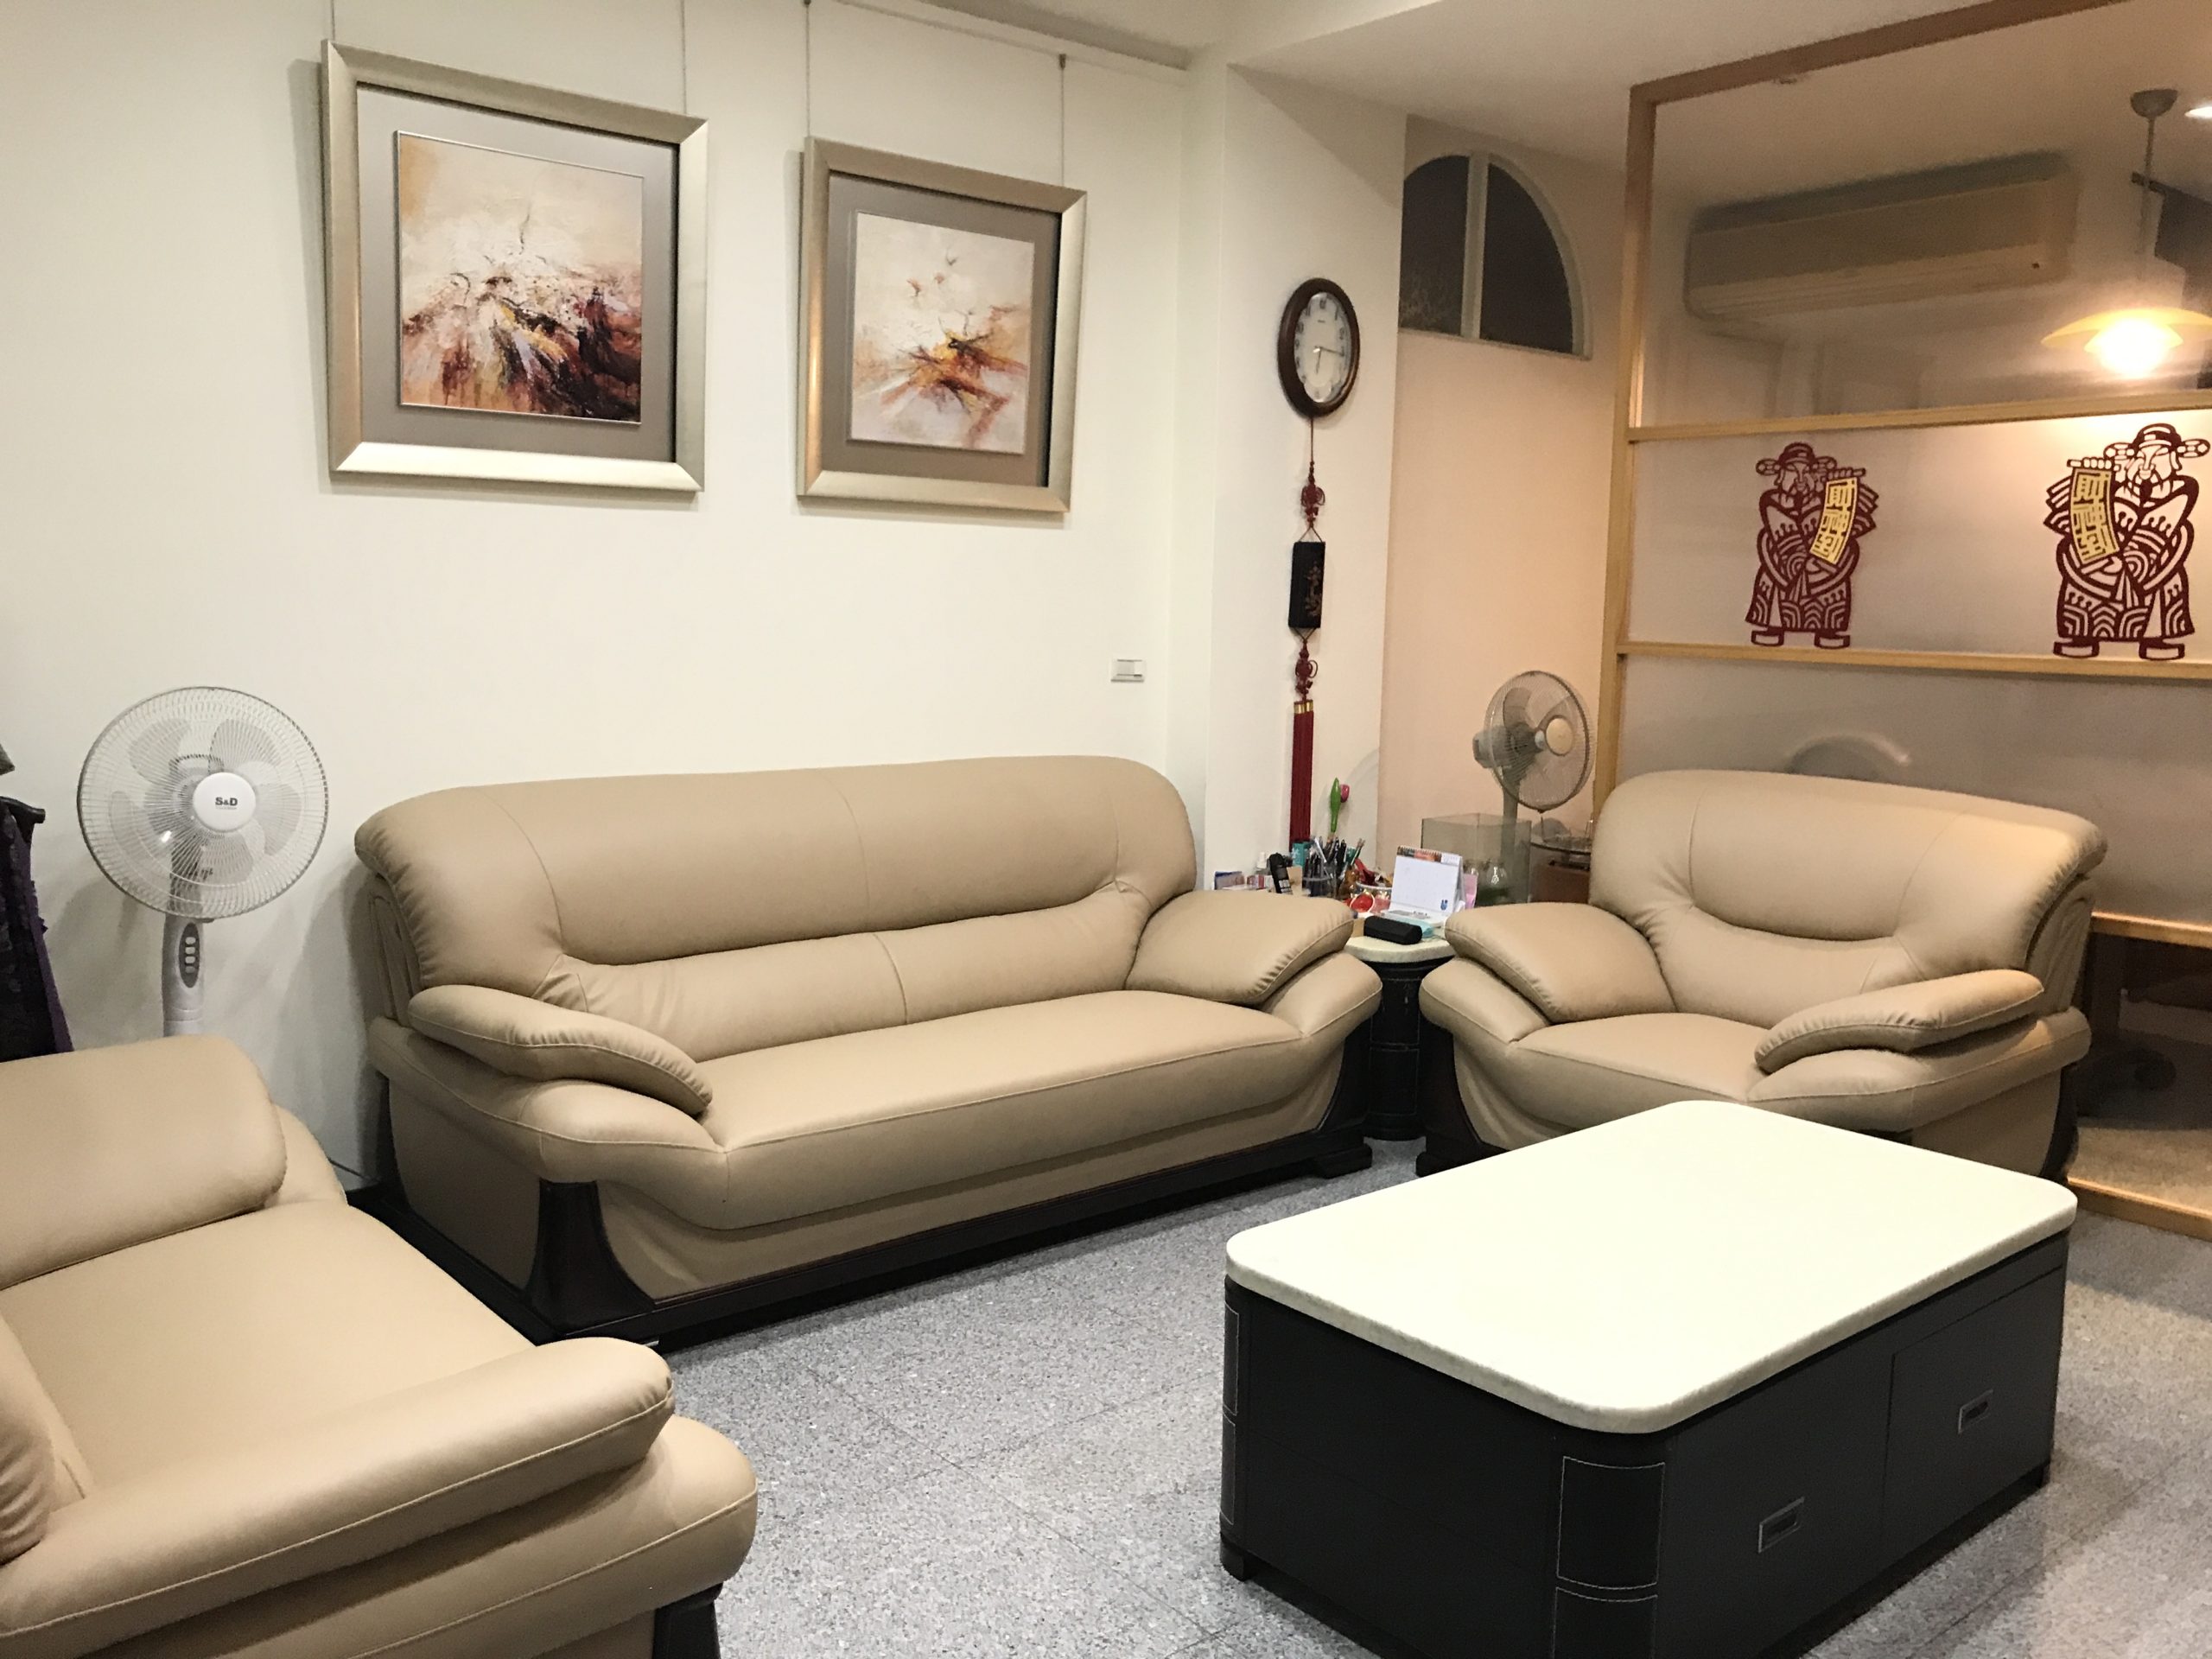 【客戶案例分享】台中市東區1+2+3人座沙發換皮翻新